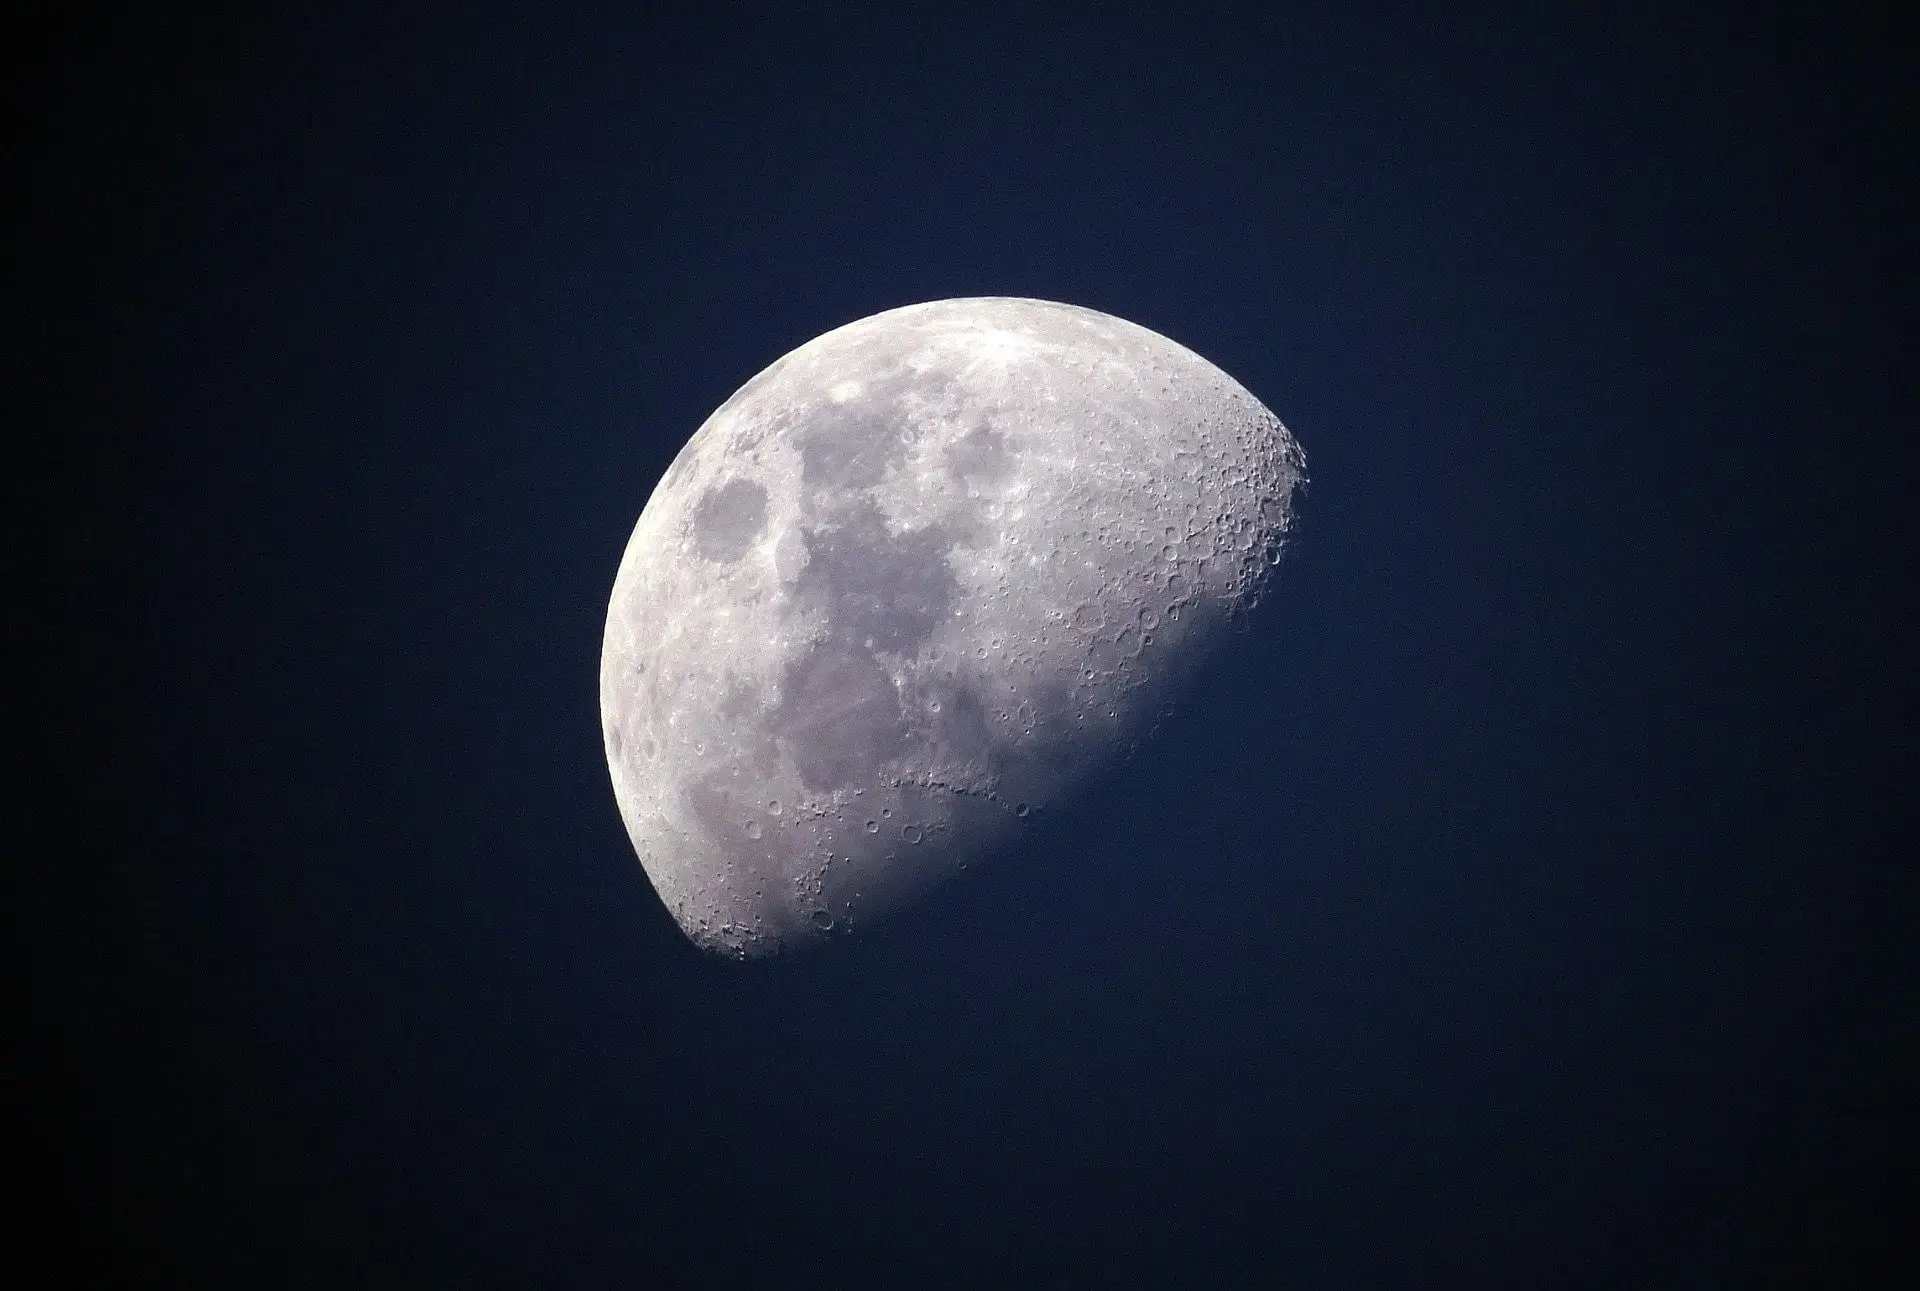 Comment prendre une magnifique photo lune ?